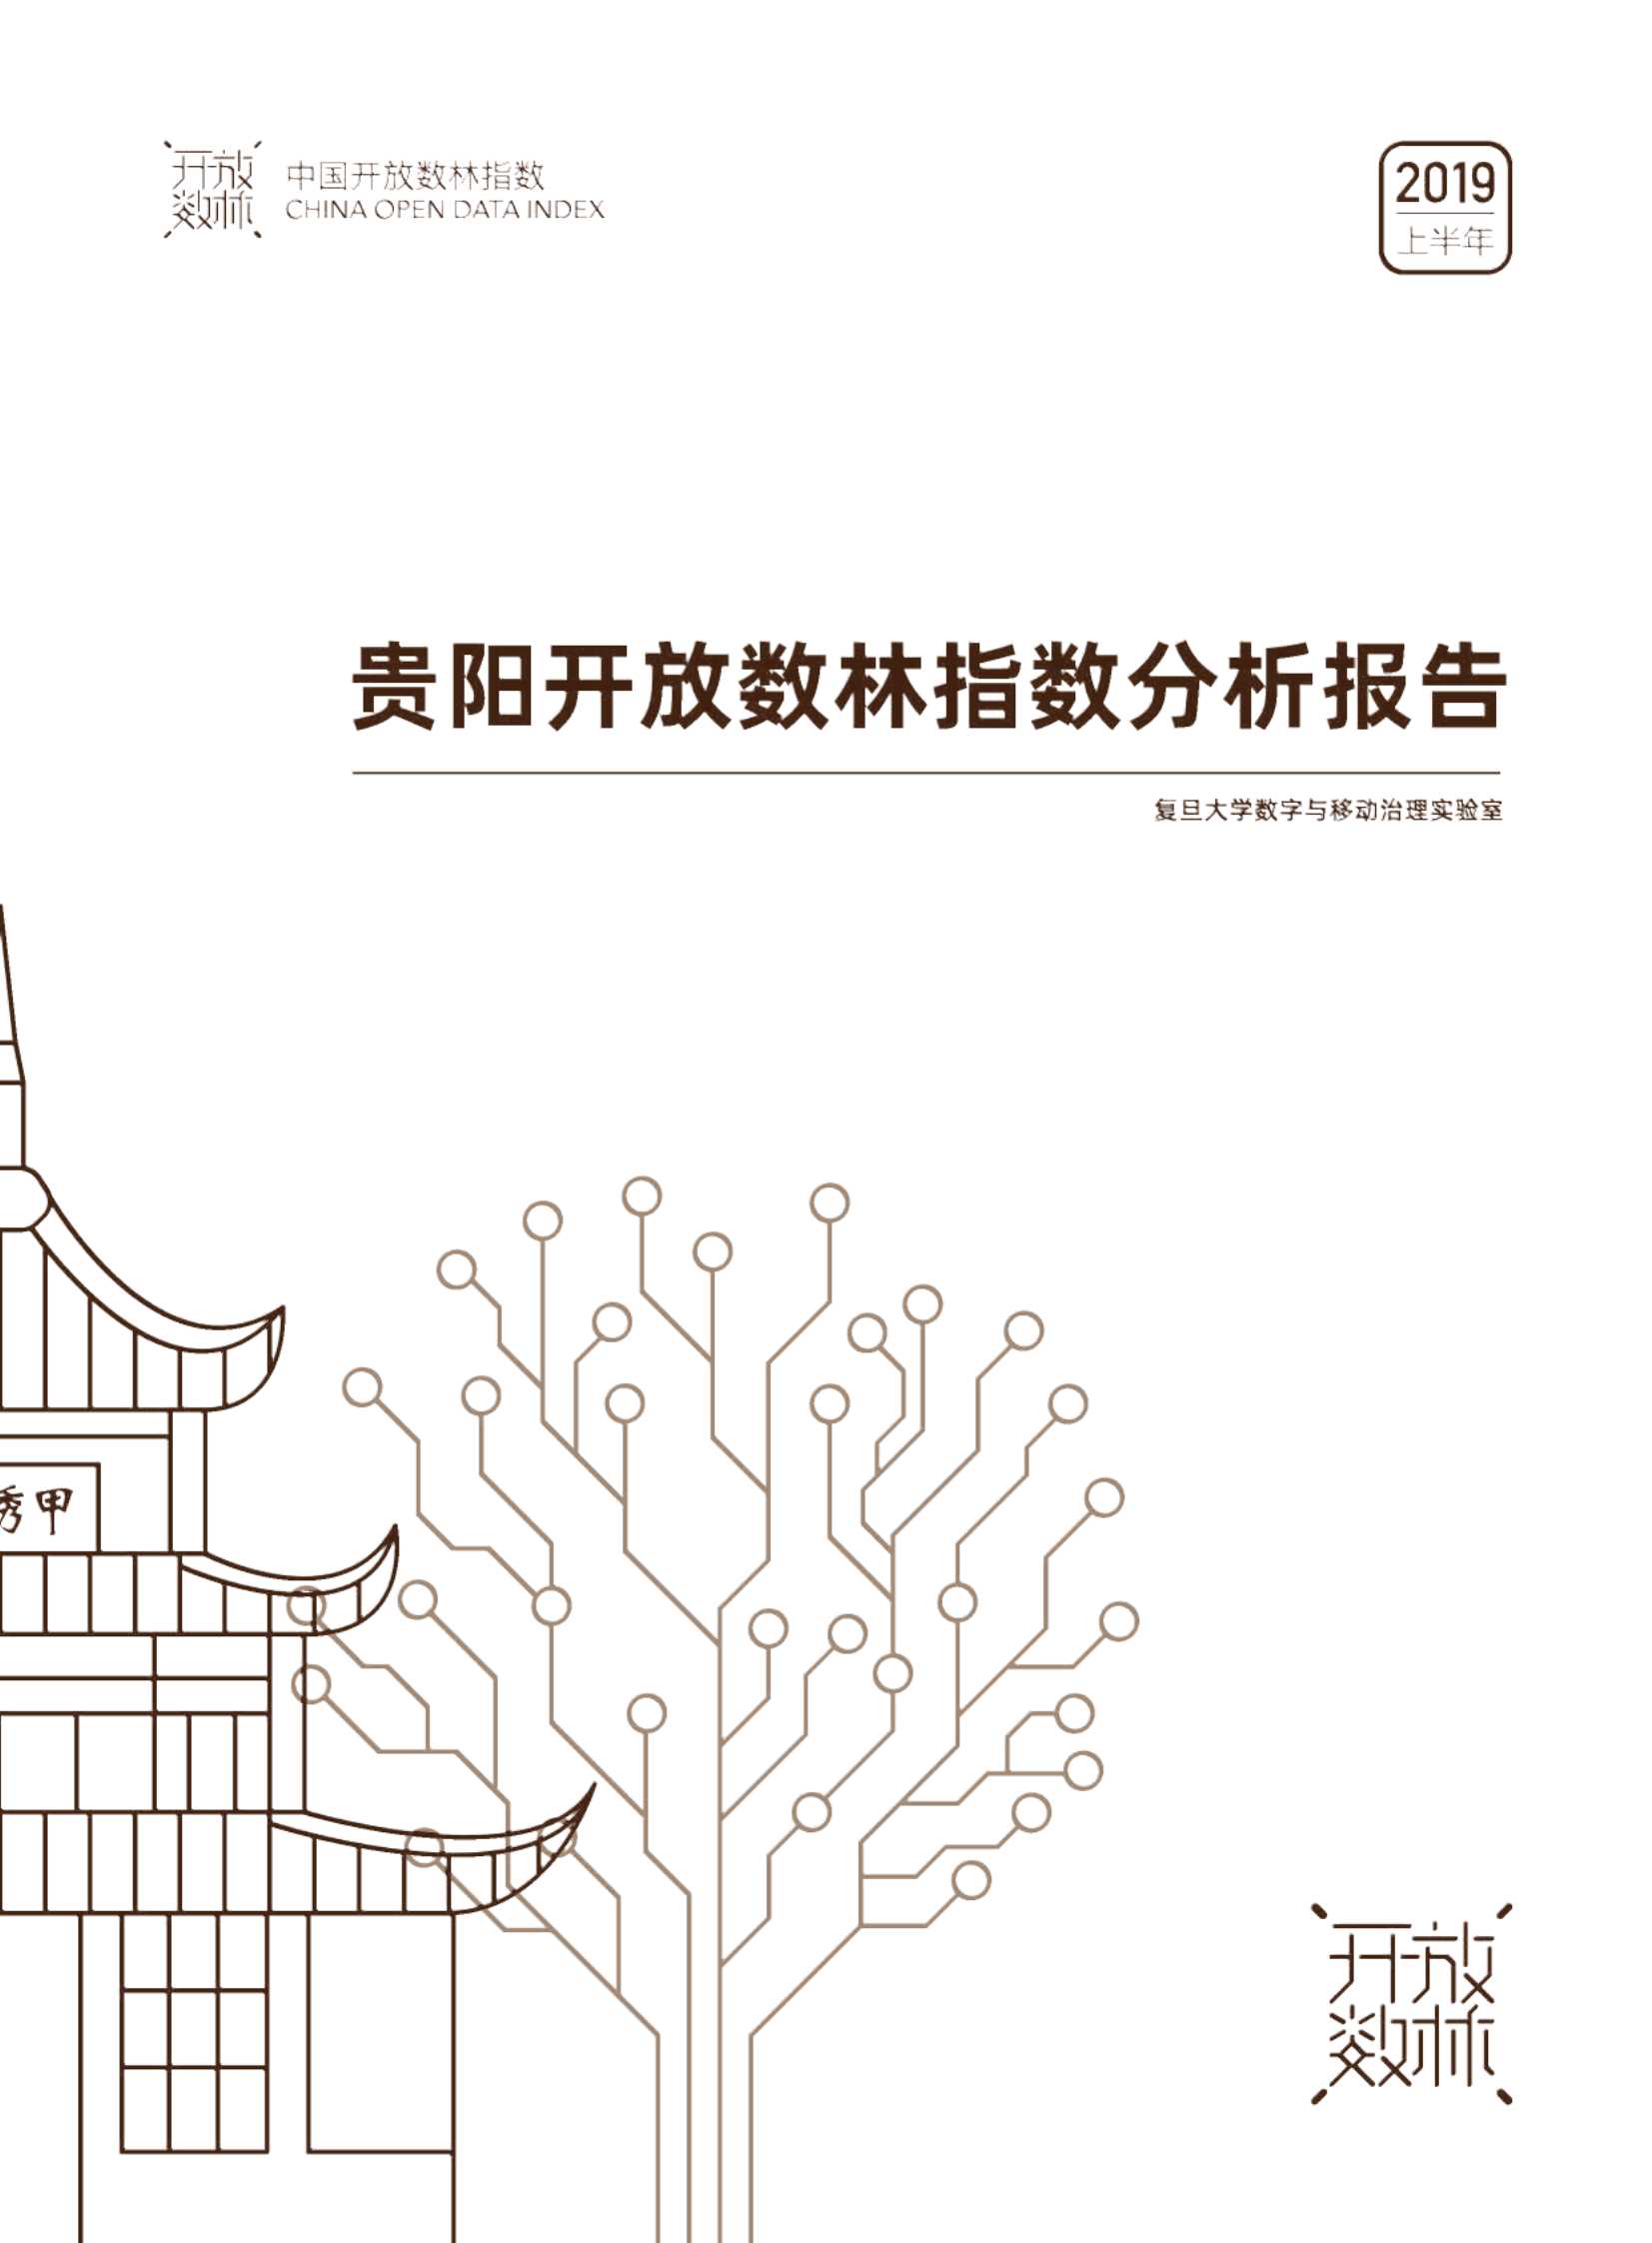 复旦大学-贵阳开放树林指数分析报告-2022.03-17页